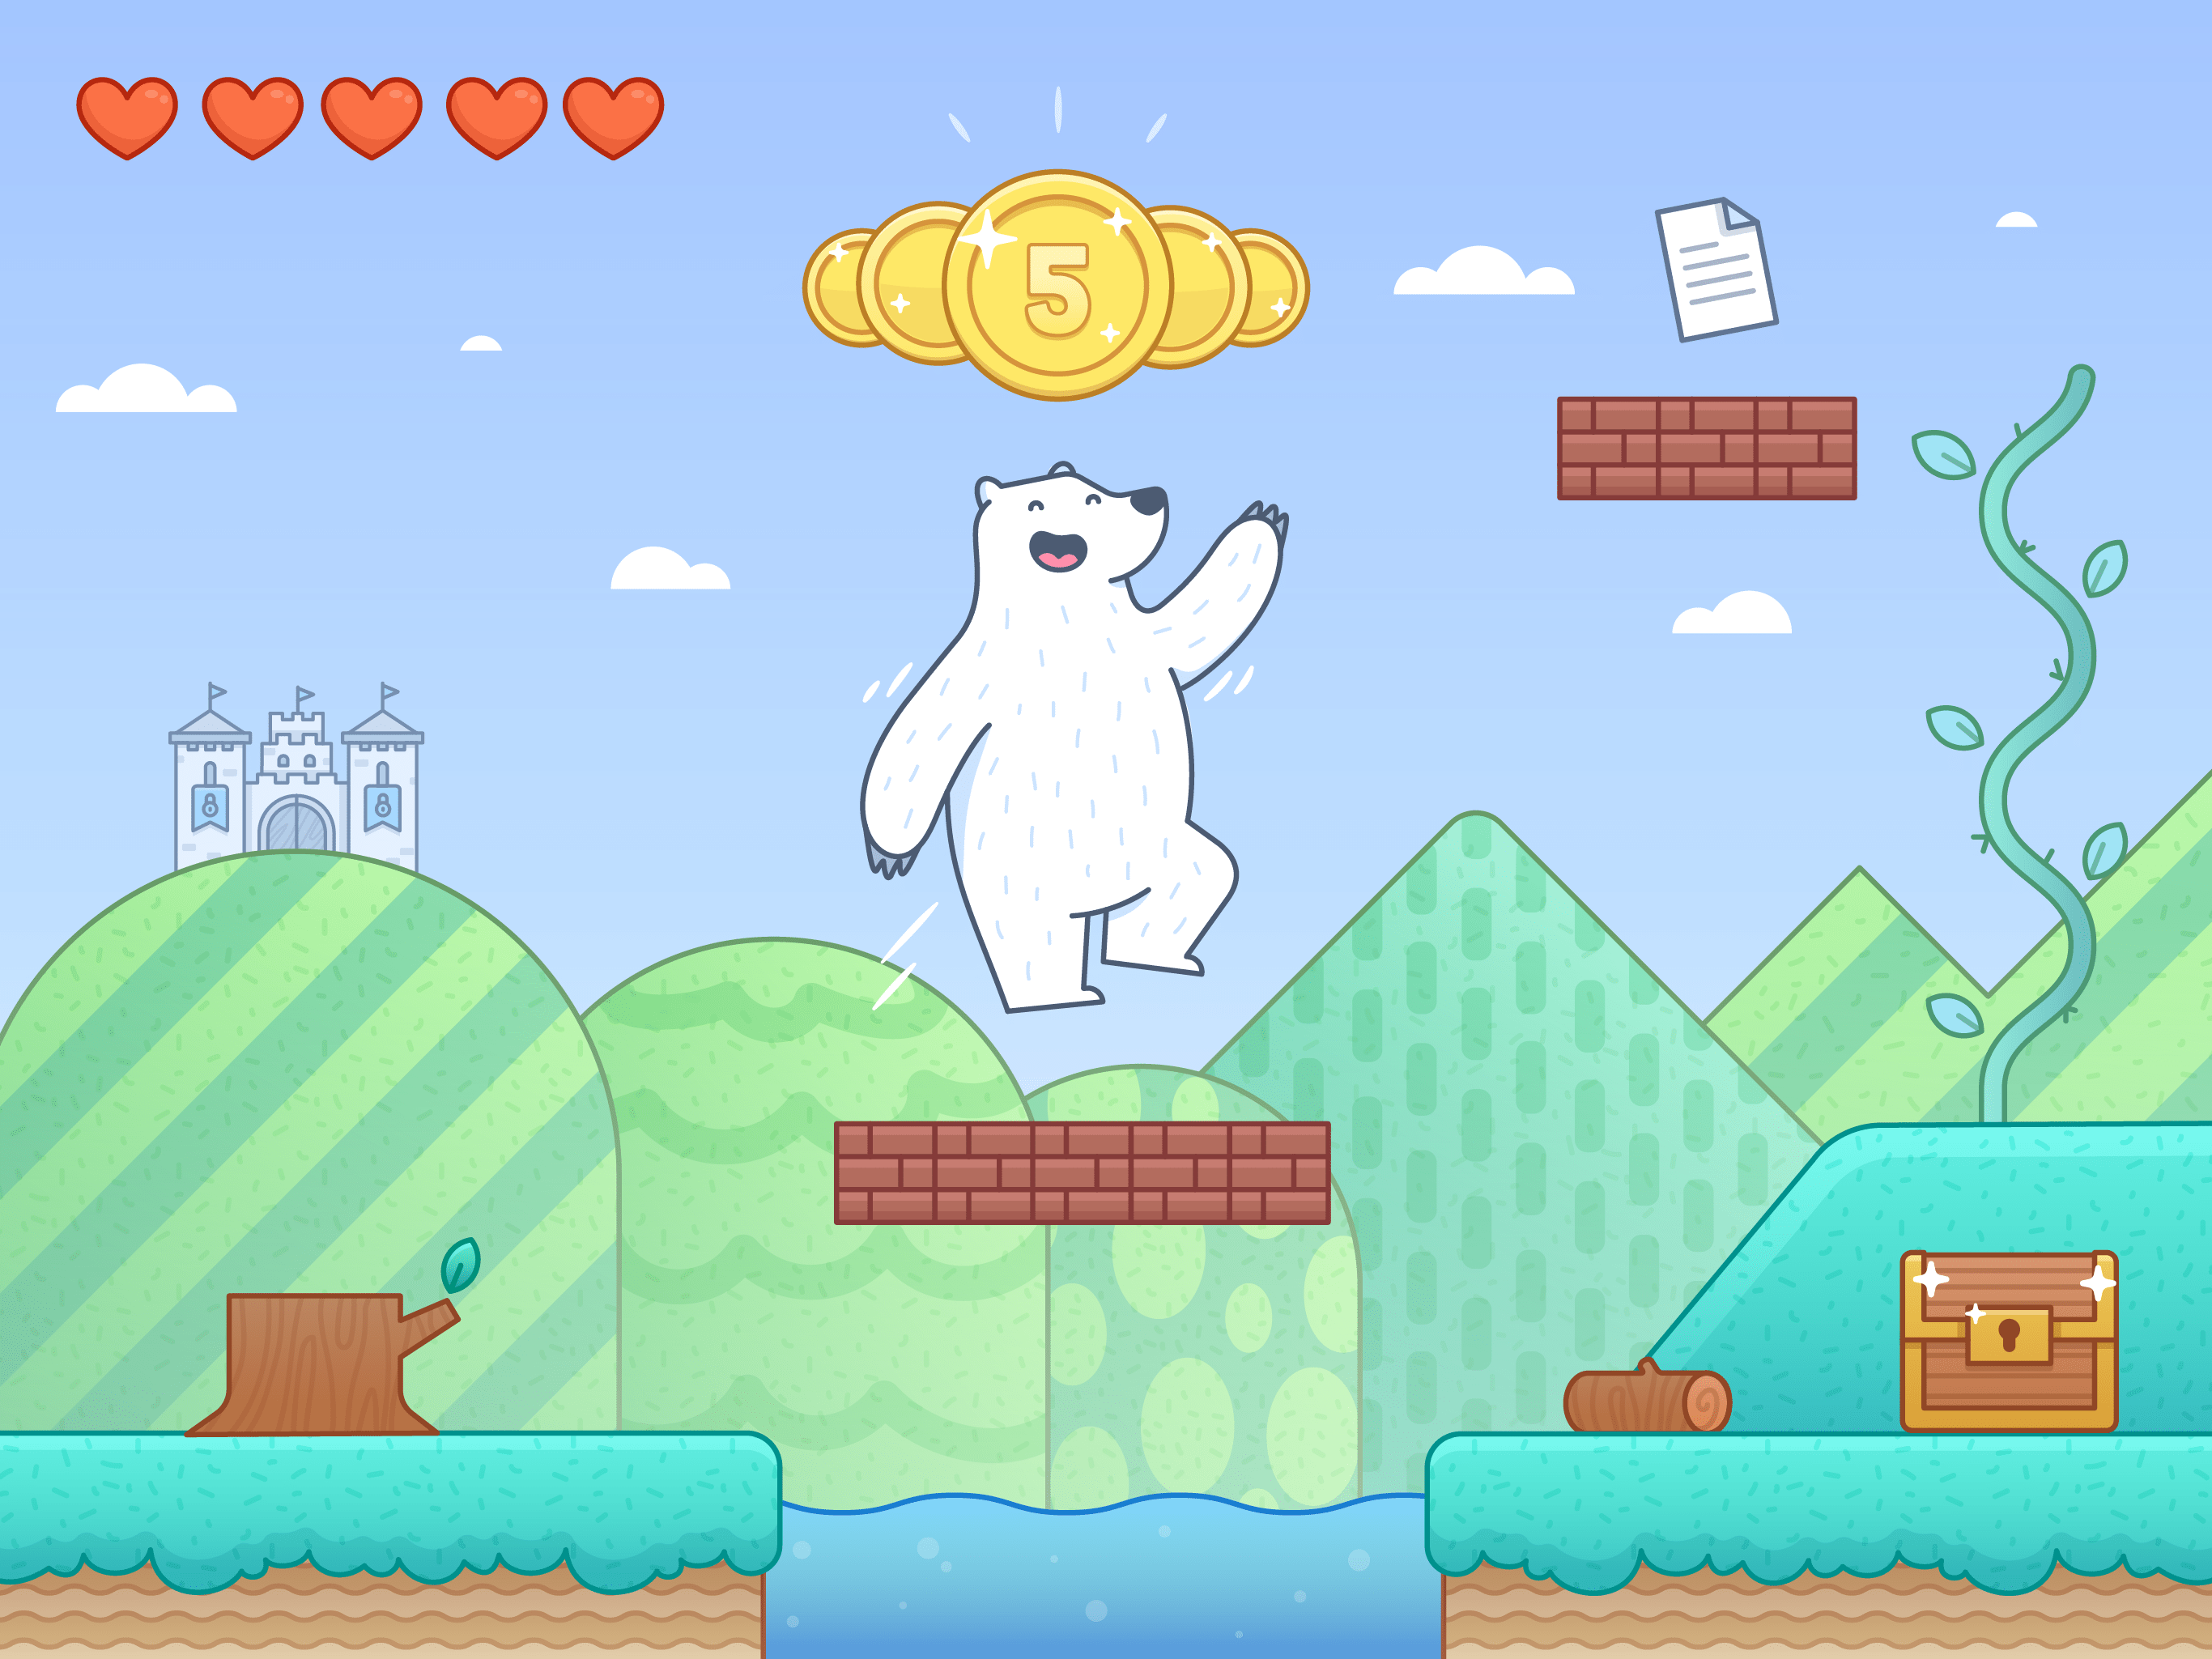 A cartoon bear is jumping over some bricks - IPad, teddy bear